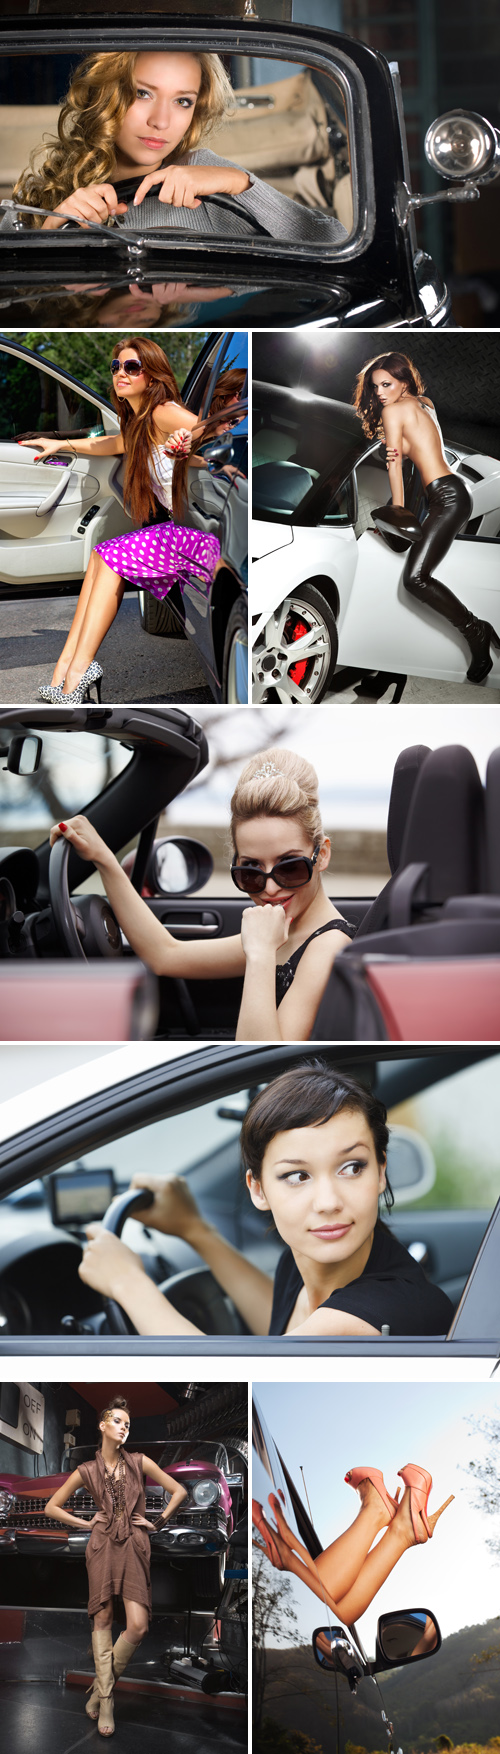 Stock Photos - Girl and Car